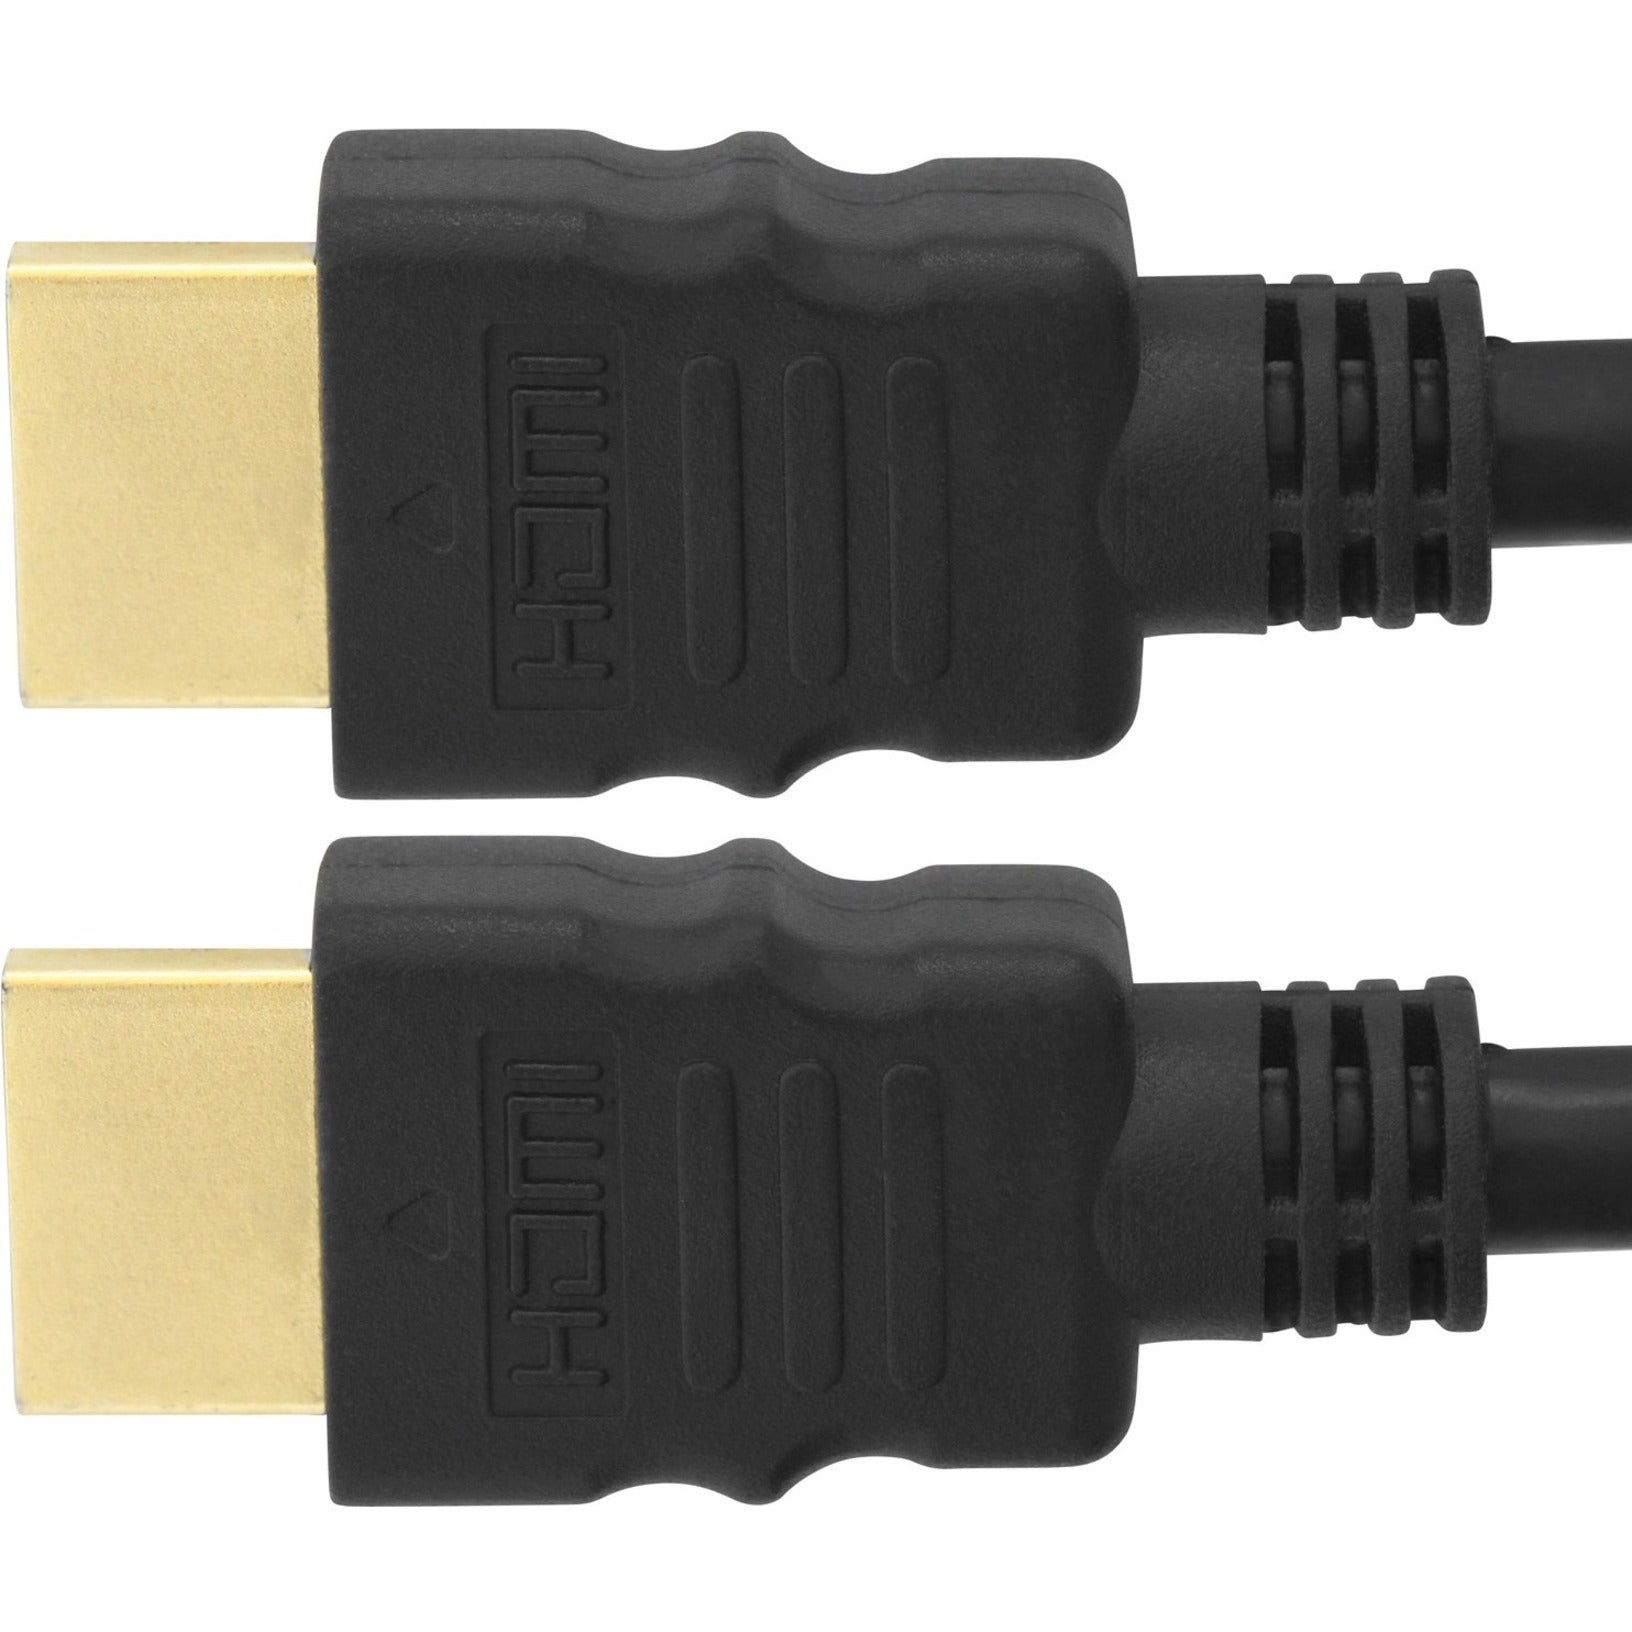 4XEM كابل HDMI ذو سرعة عالية 10 أقدام 3 متر يدعم 1080 بكسل 3D والإيثرنت وقناة إرجاع الصوت